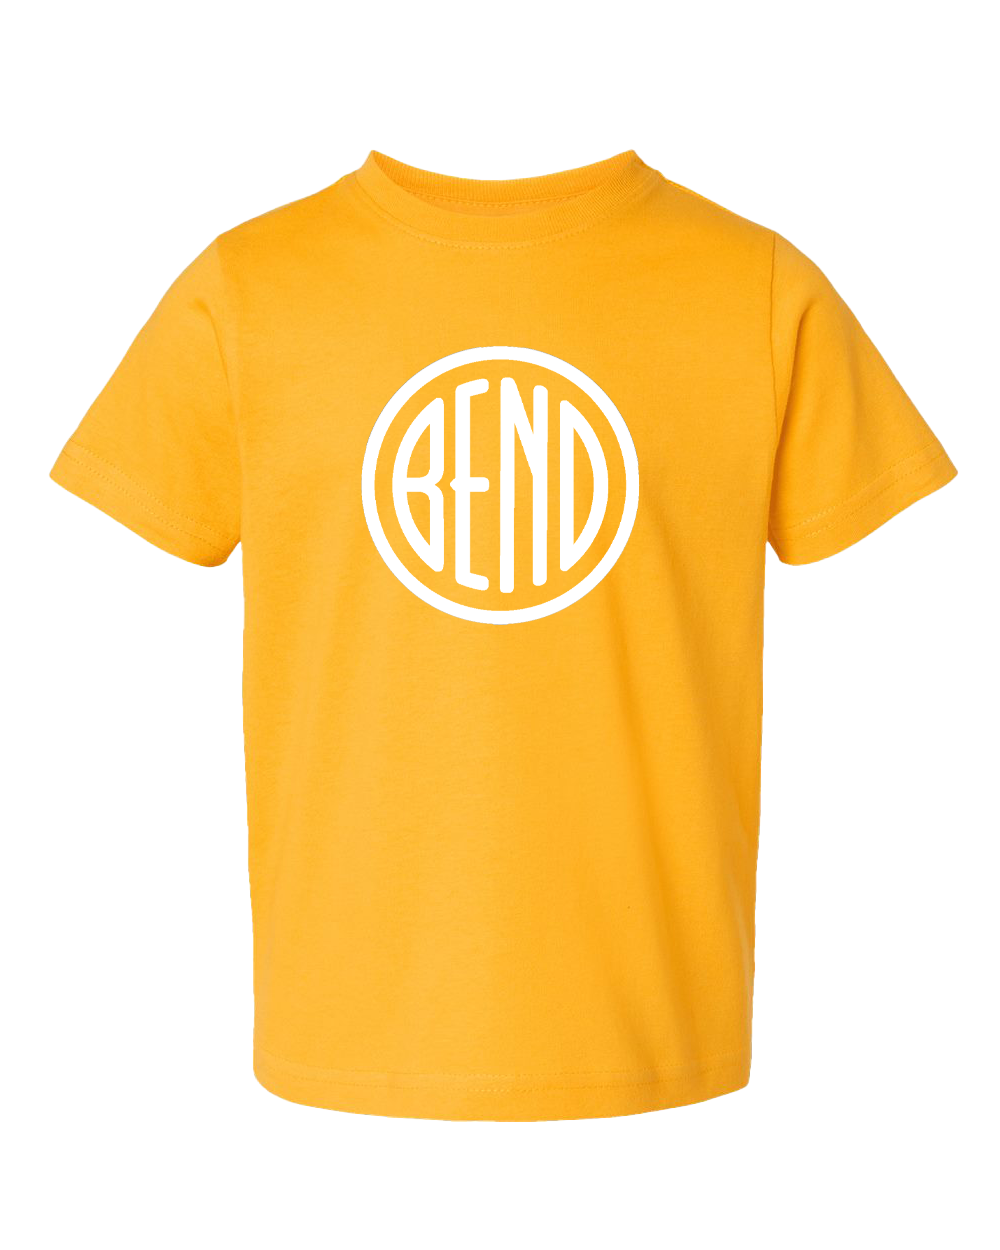 Bend Logo Toddler T-Shirt